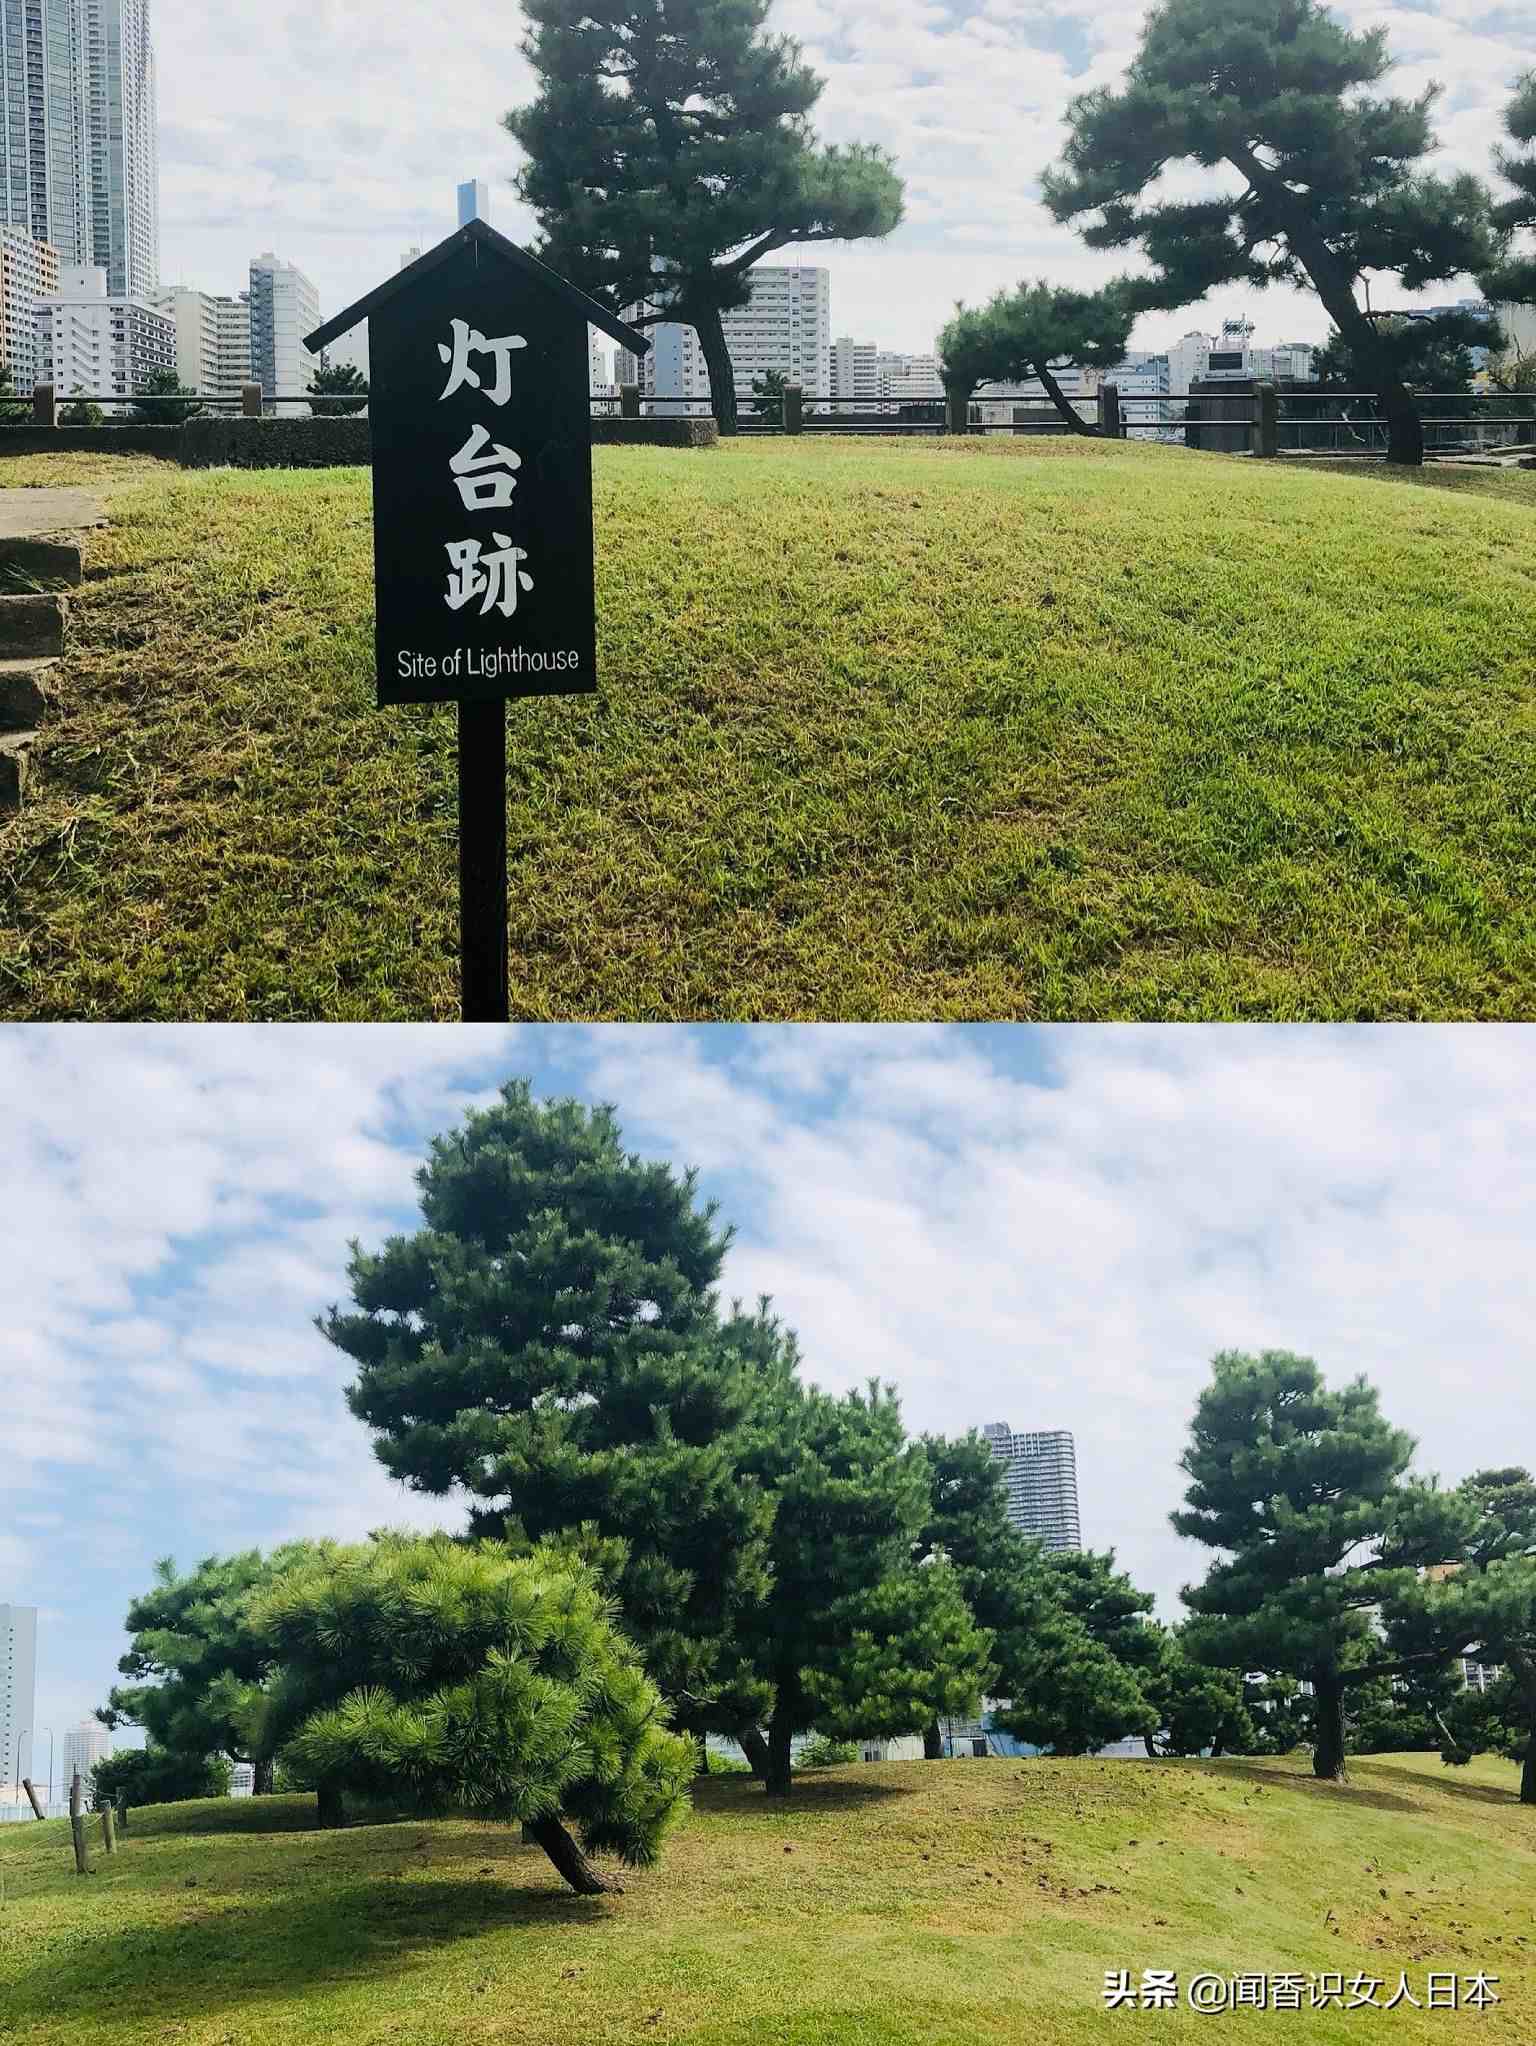 隐藏在东京都市中的旧皇家庭园，利用东京湾海水潮汐变化引潮入园